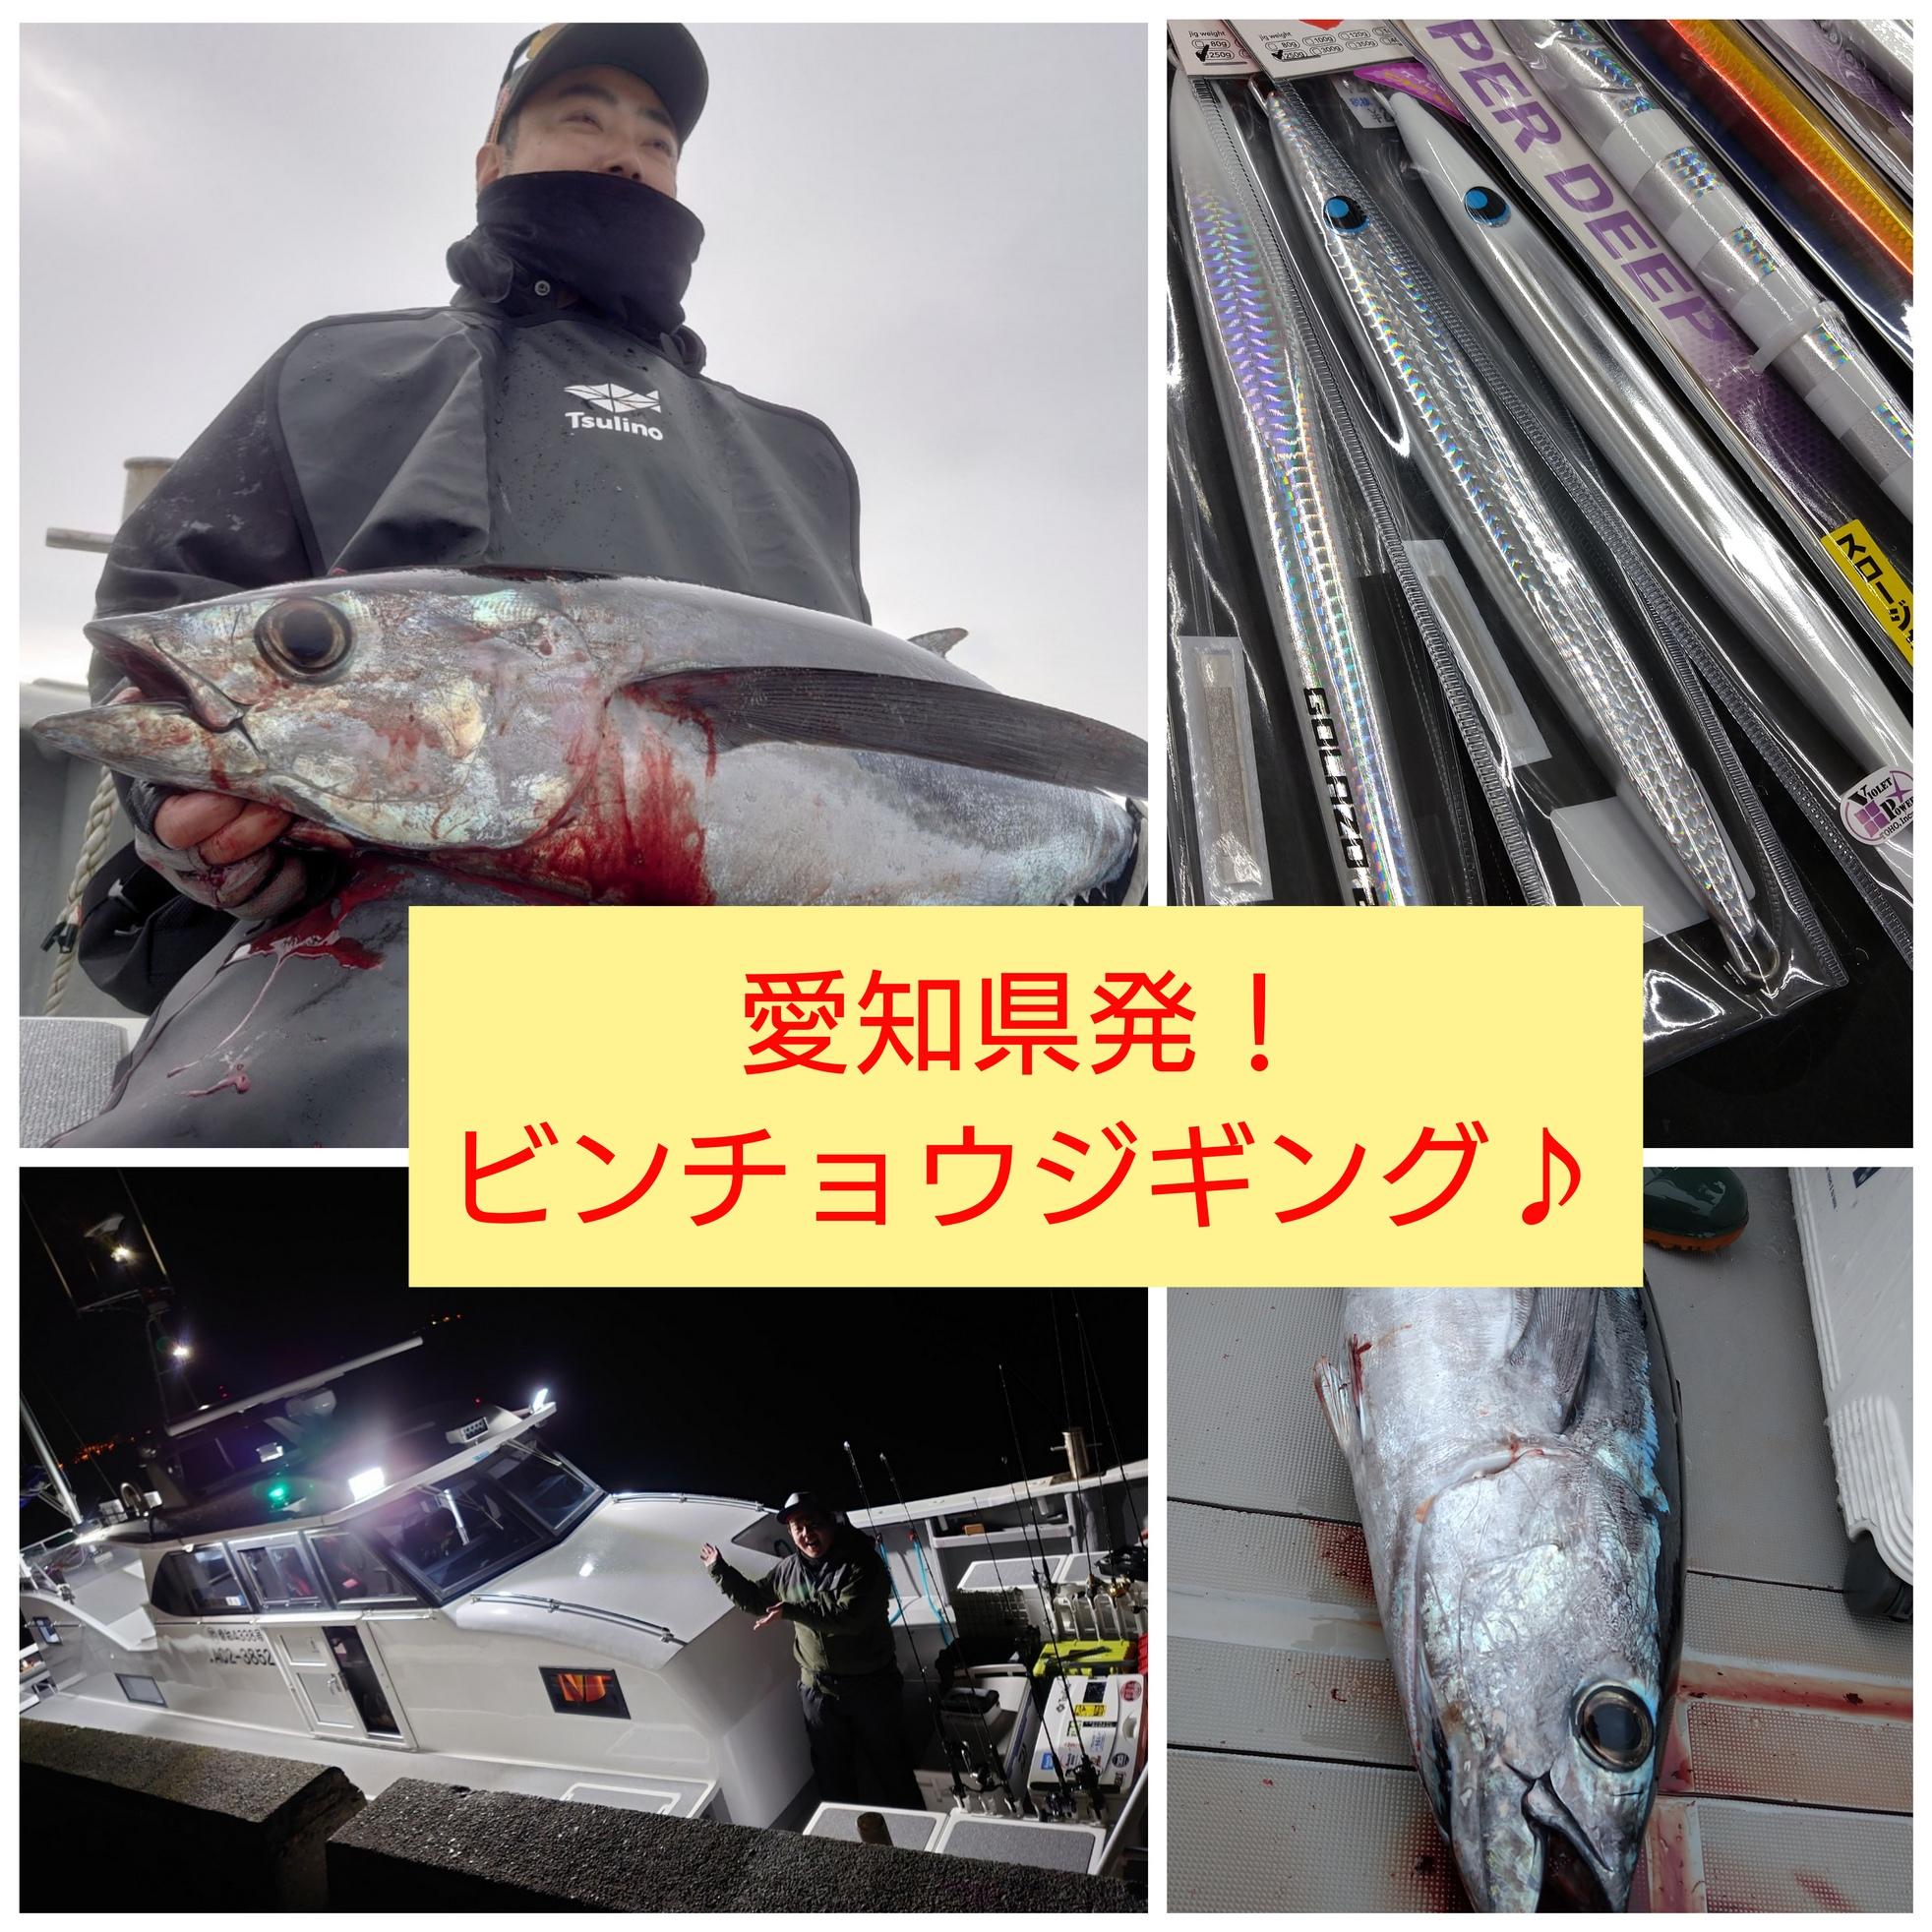 愛知県発 ビンチョウジギングに行ってきました 釣具のイシグロ 釣り情報サイト